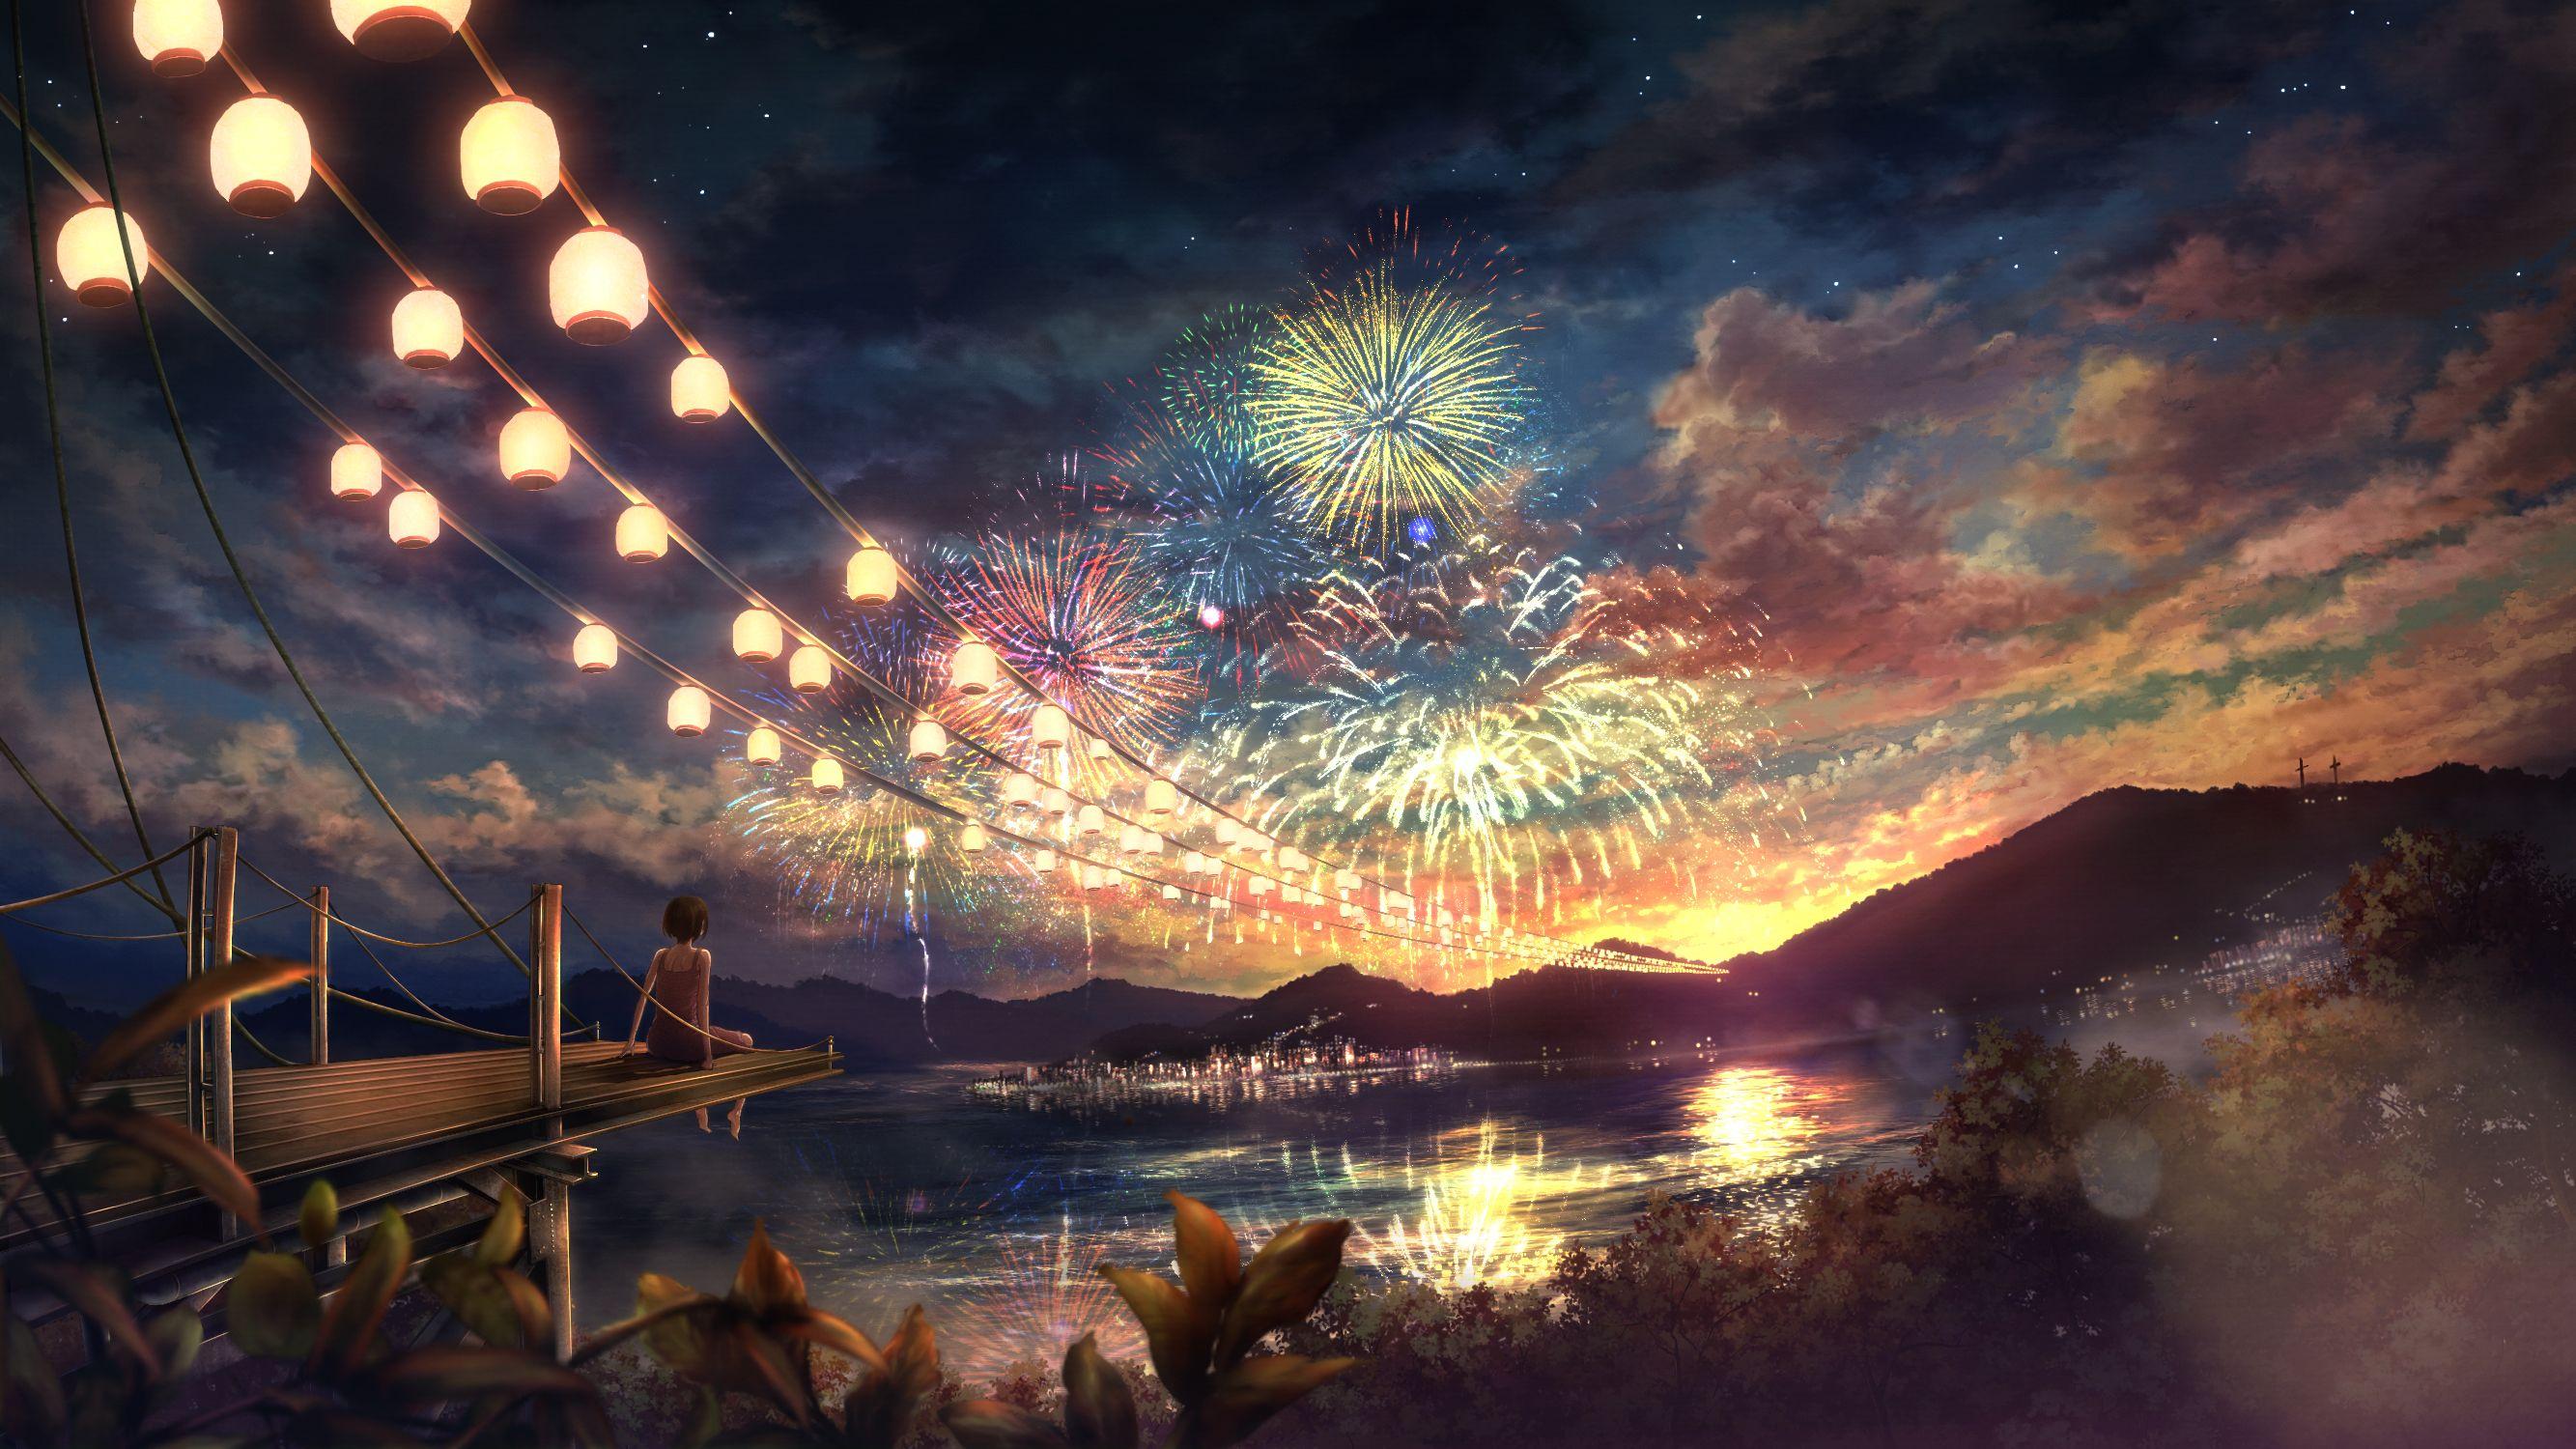 Anime Landscape for Desktop Anime Garden Sunshine Flowers 4K wallpaper